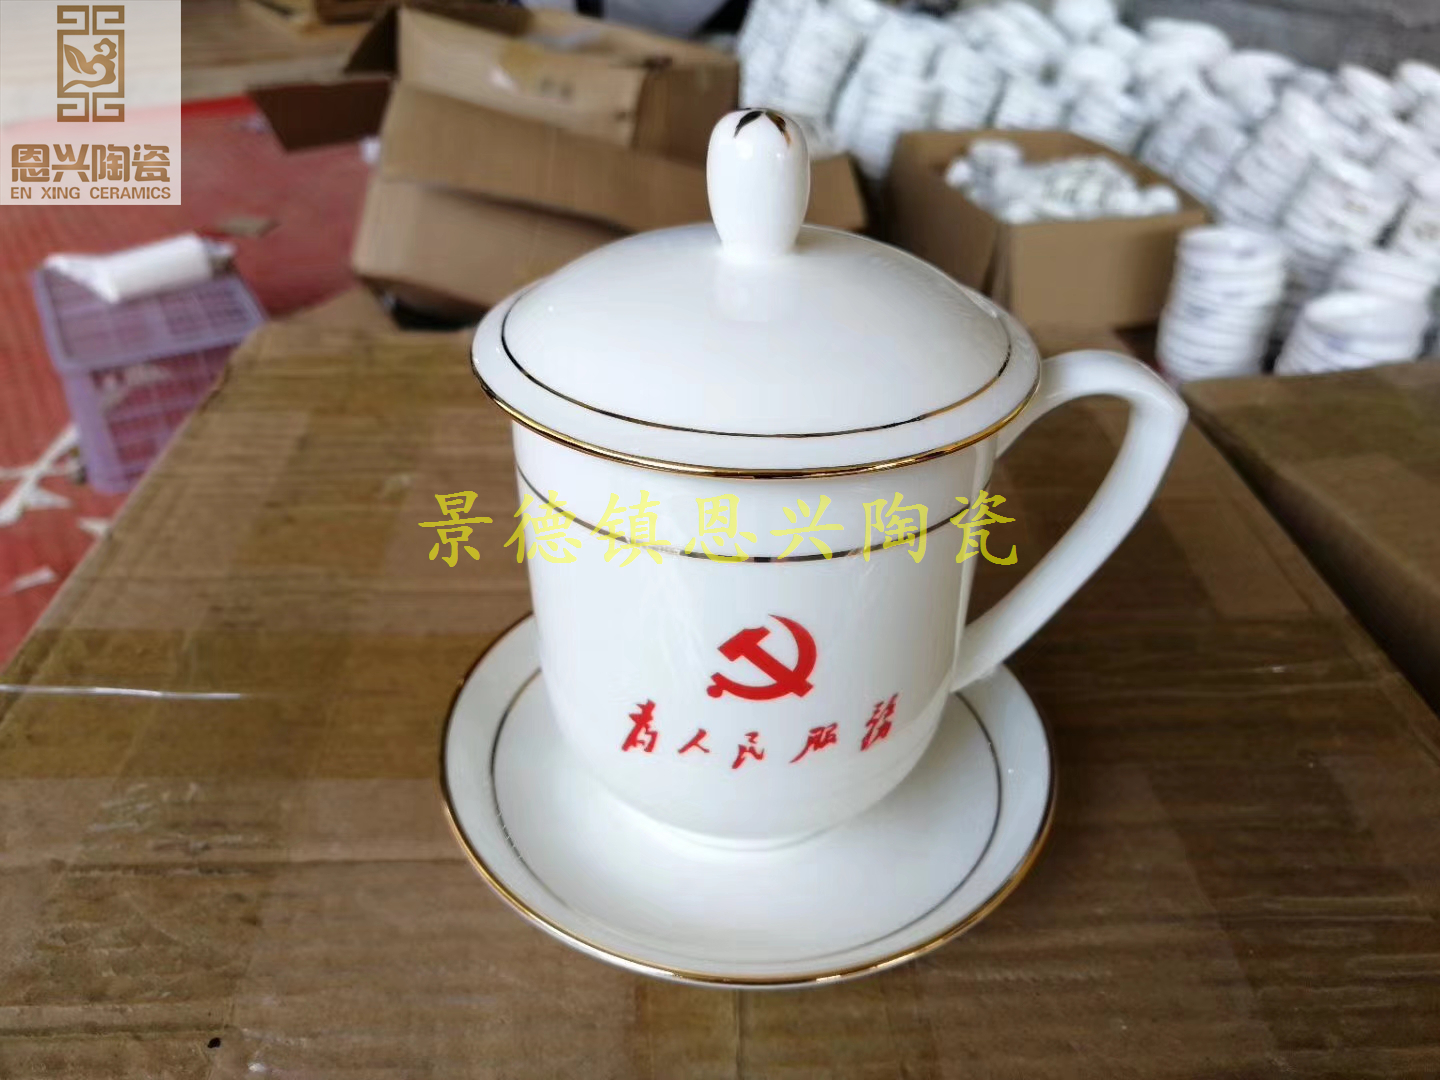 供应陶瓷茶杯 礼品茶杯会议杯 办公杯 恩兴陶瓷礼品茶杯生产厂家